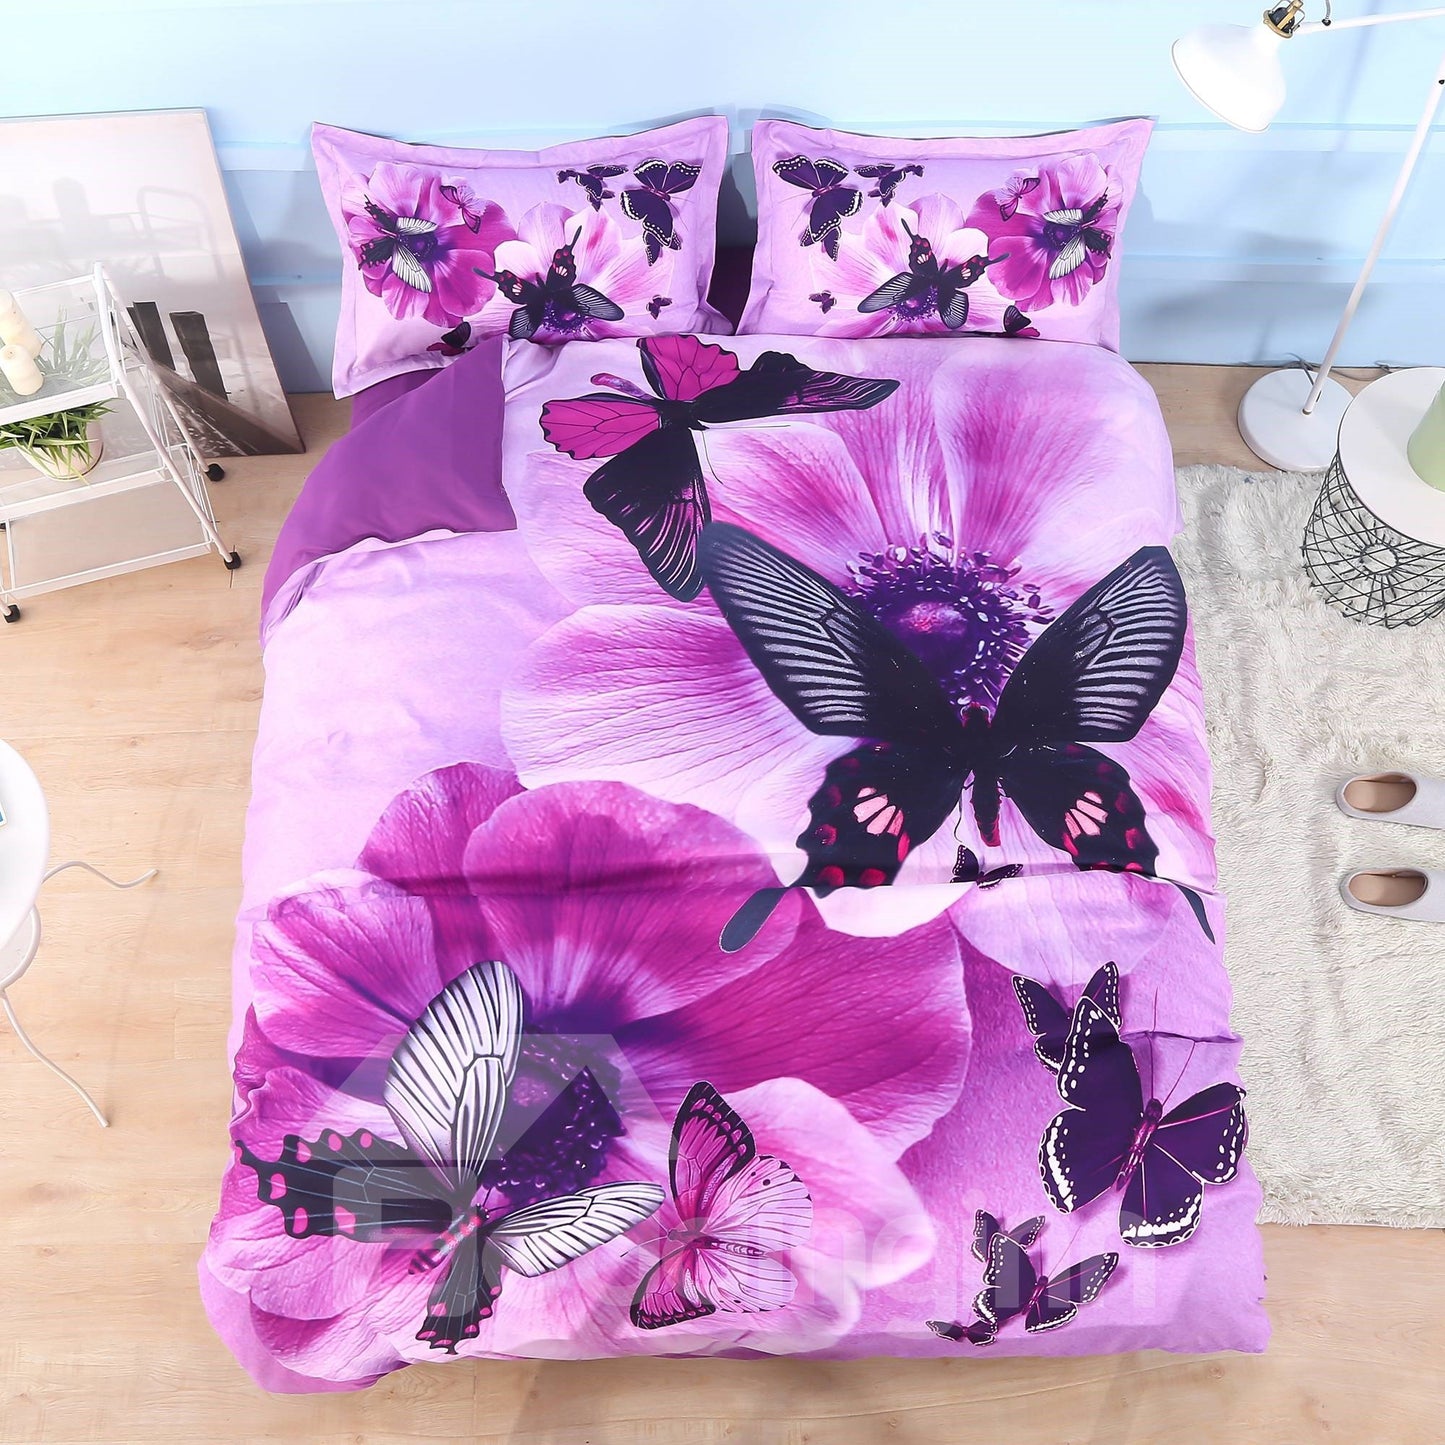 Juego de cama/funda nórdica con diseño floral 3D de 4 piezas con estampado de pensamientos y mariposas, microfibra morada 